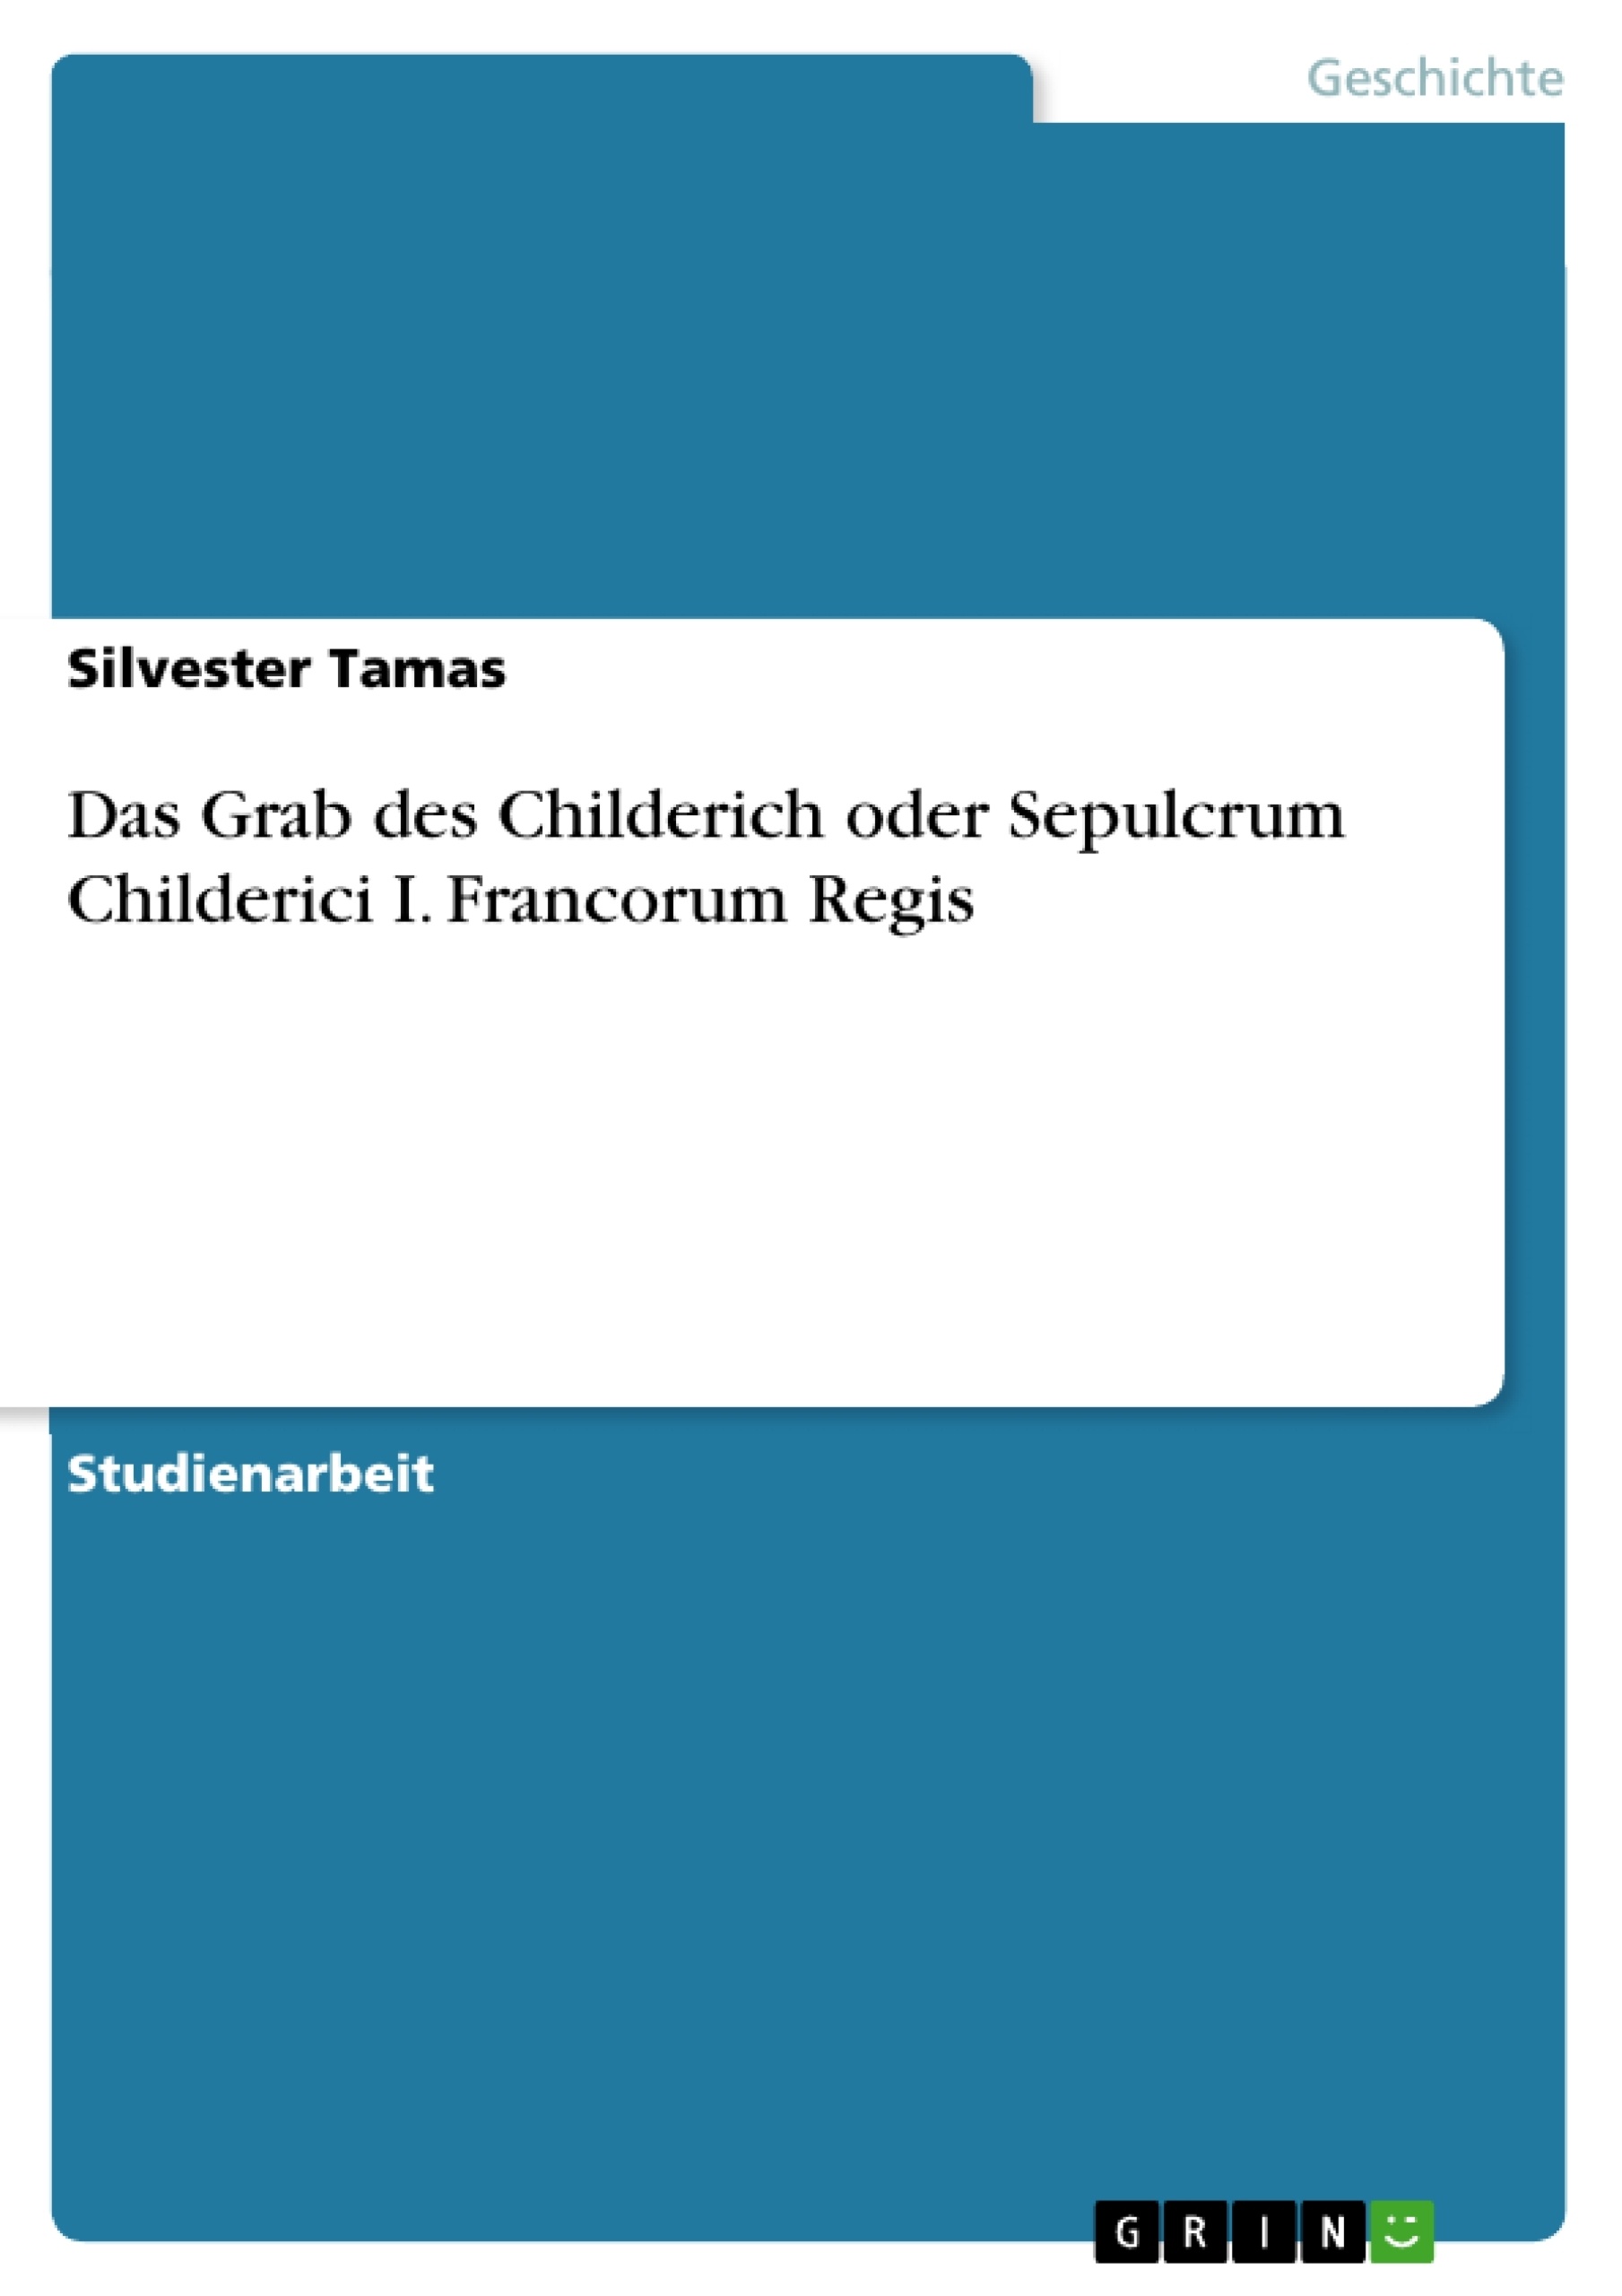 Título: Das Grab des Childerich oder Sepulcrum Childerici I. Francorum Regis 